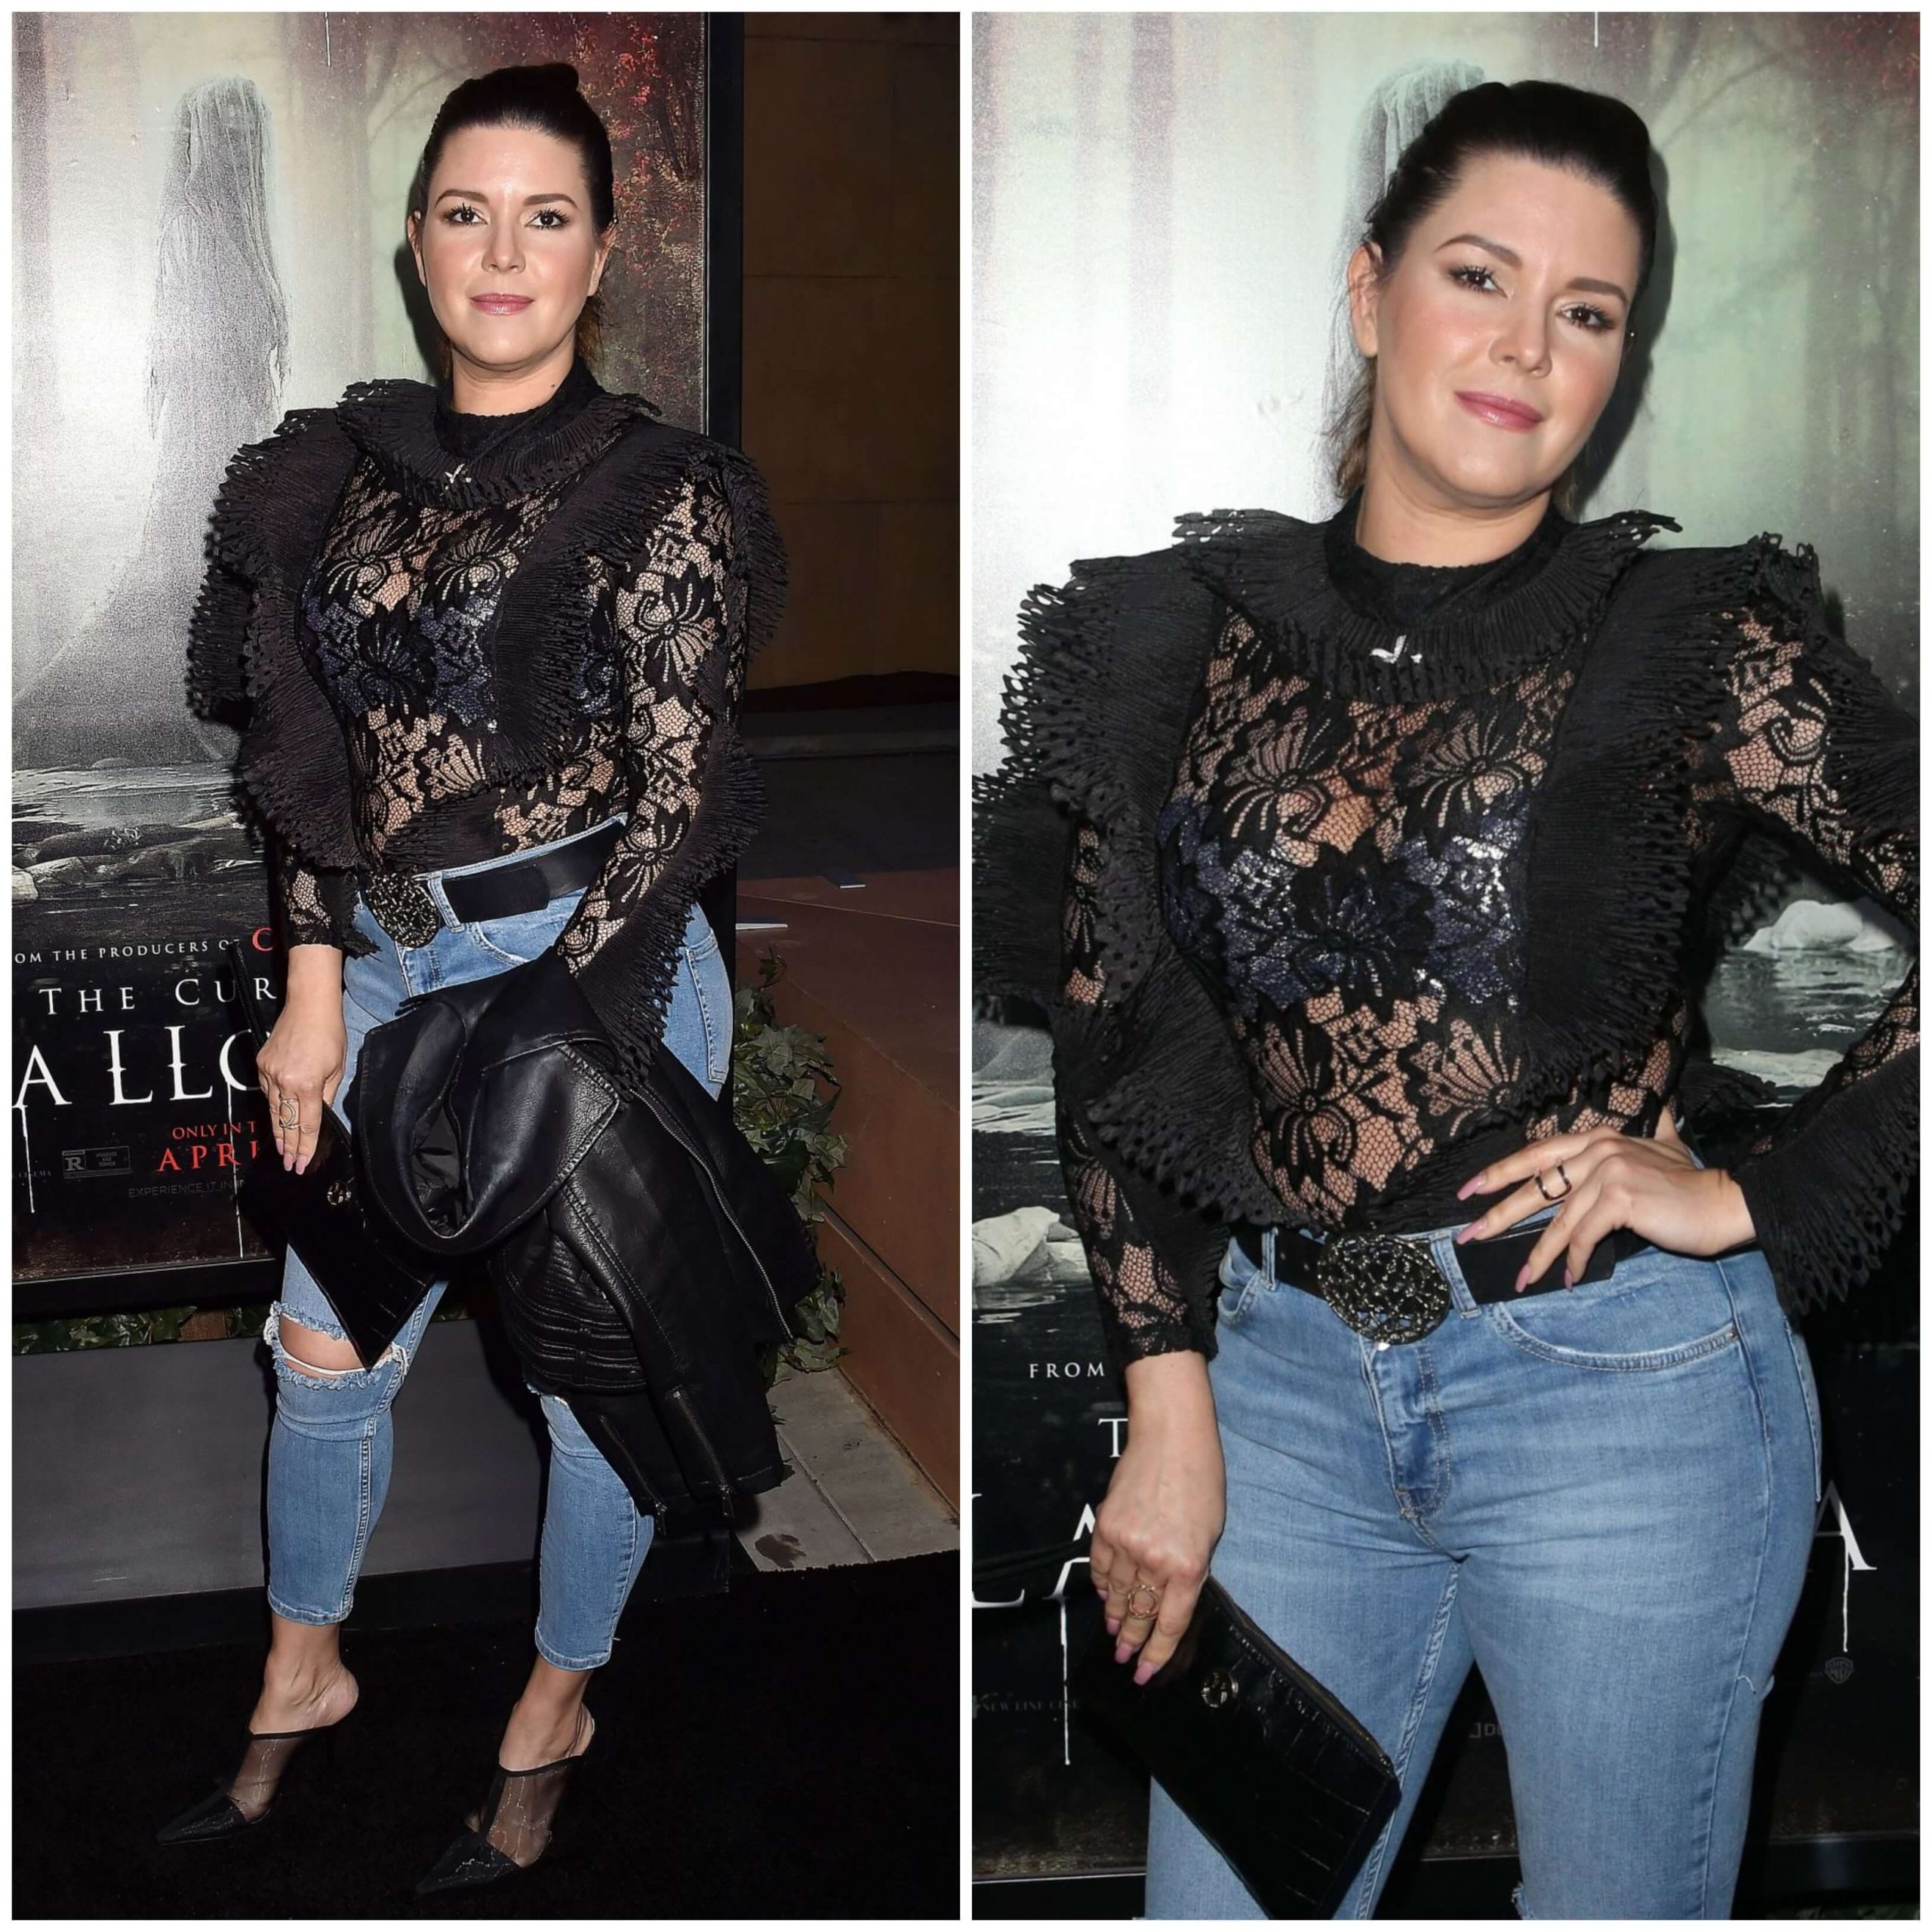 Alicia Machado –In Black ruffled Top & Damaged Jeans “The Curse of La Llorona” Premiere in LA